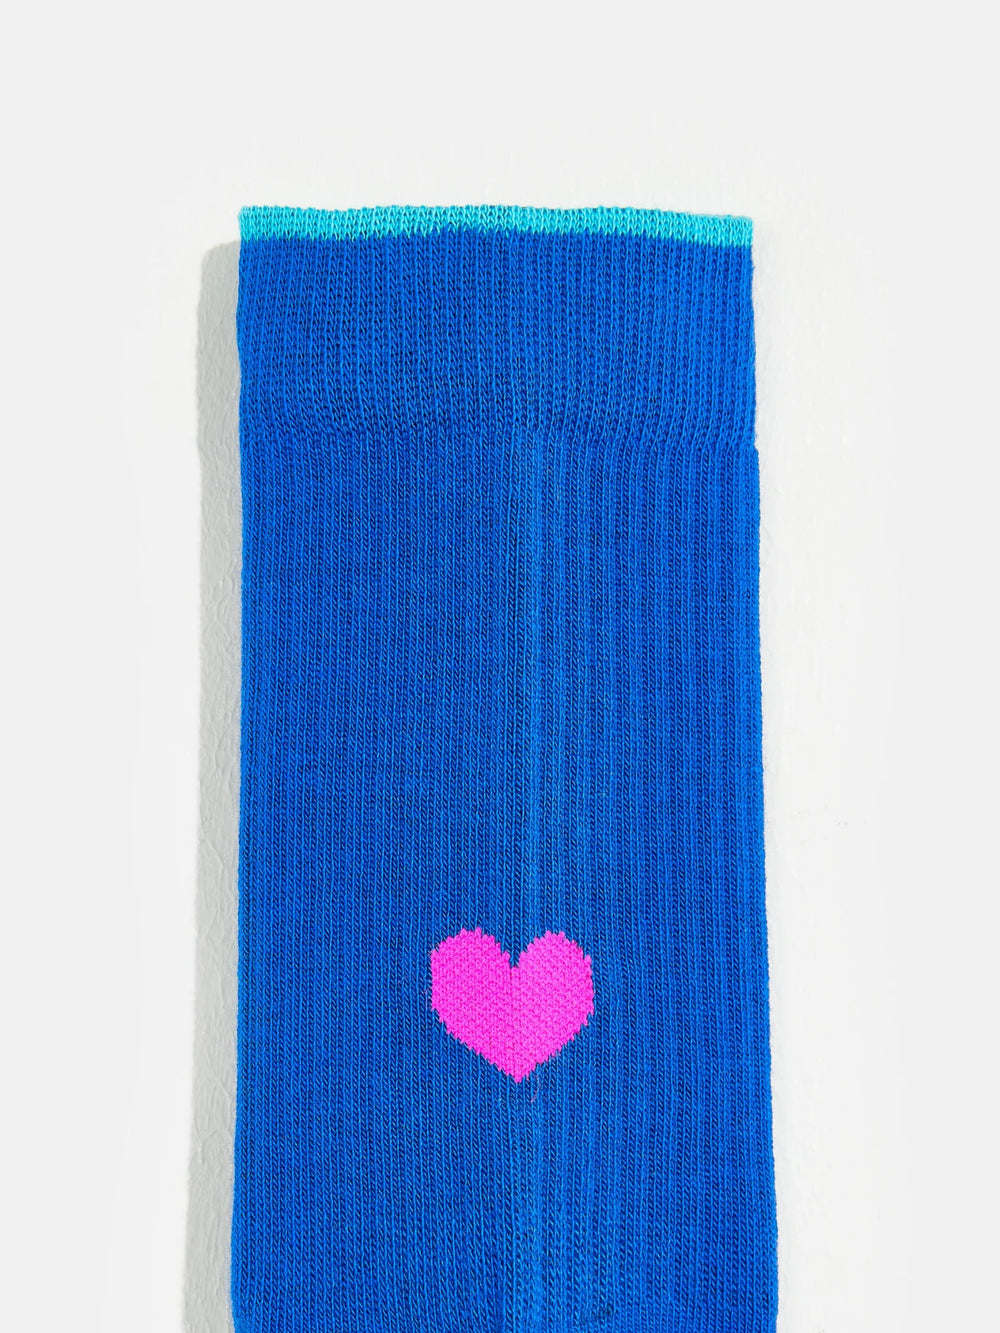 Beart Socks - Blueworker - Posh New York